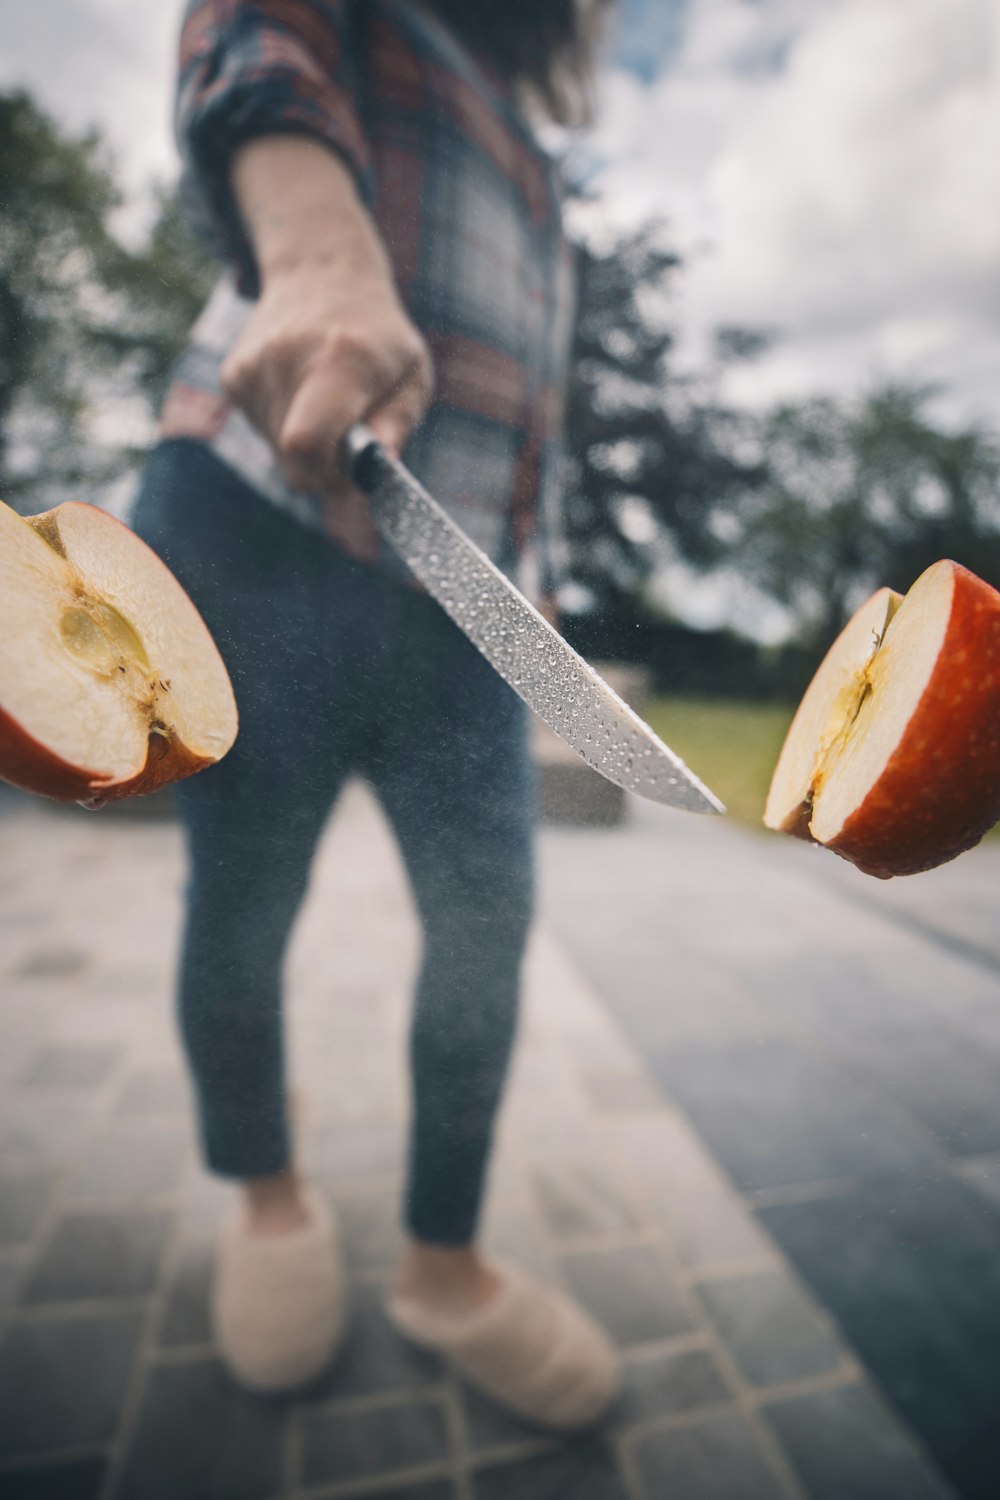 リンゴの実をスライスするナイフを持っている人